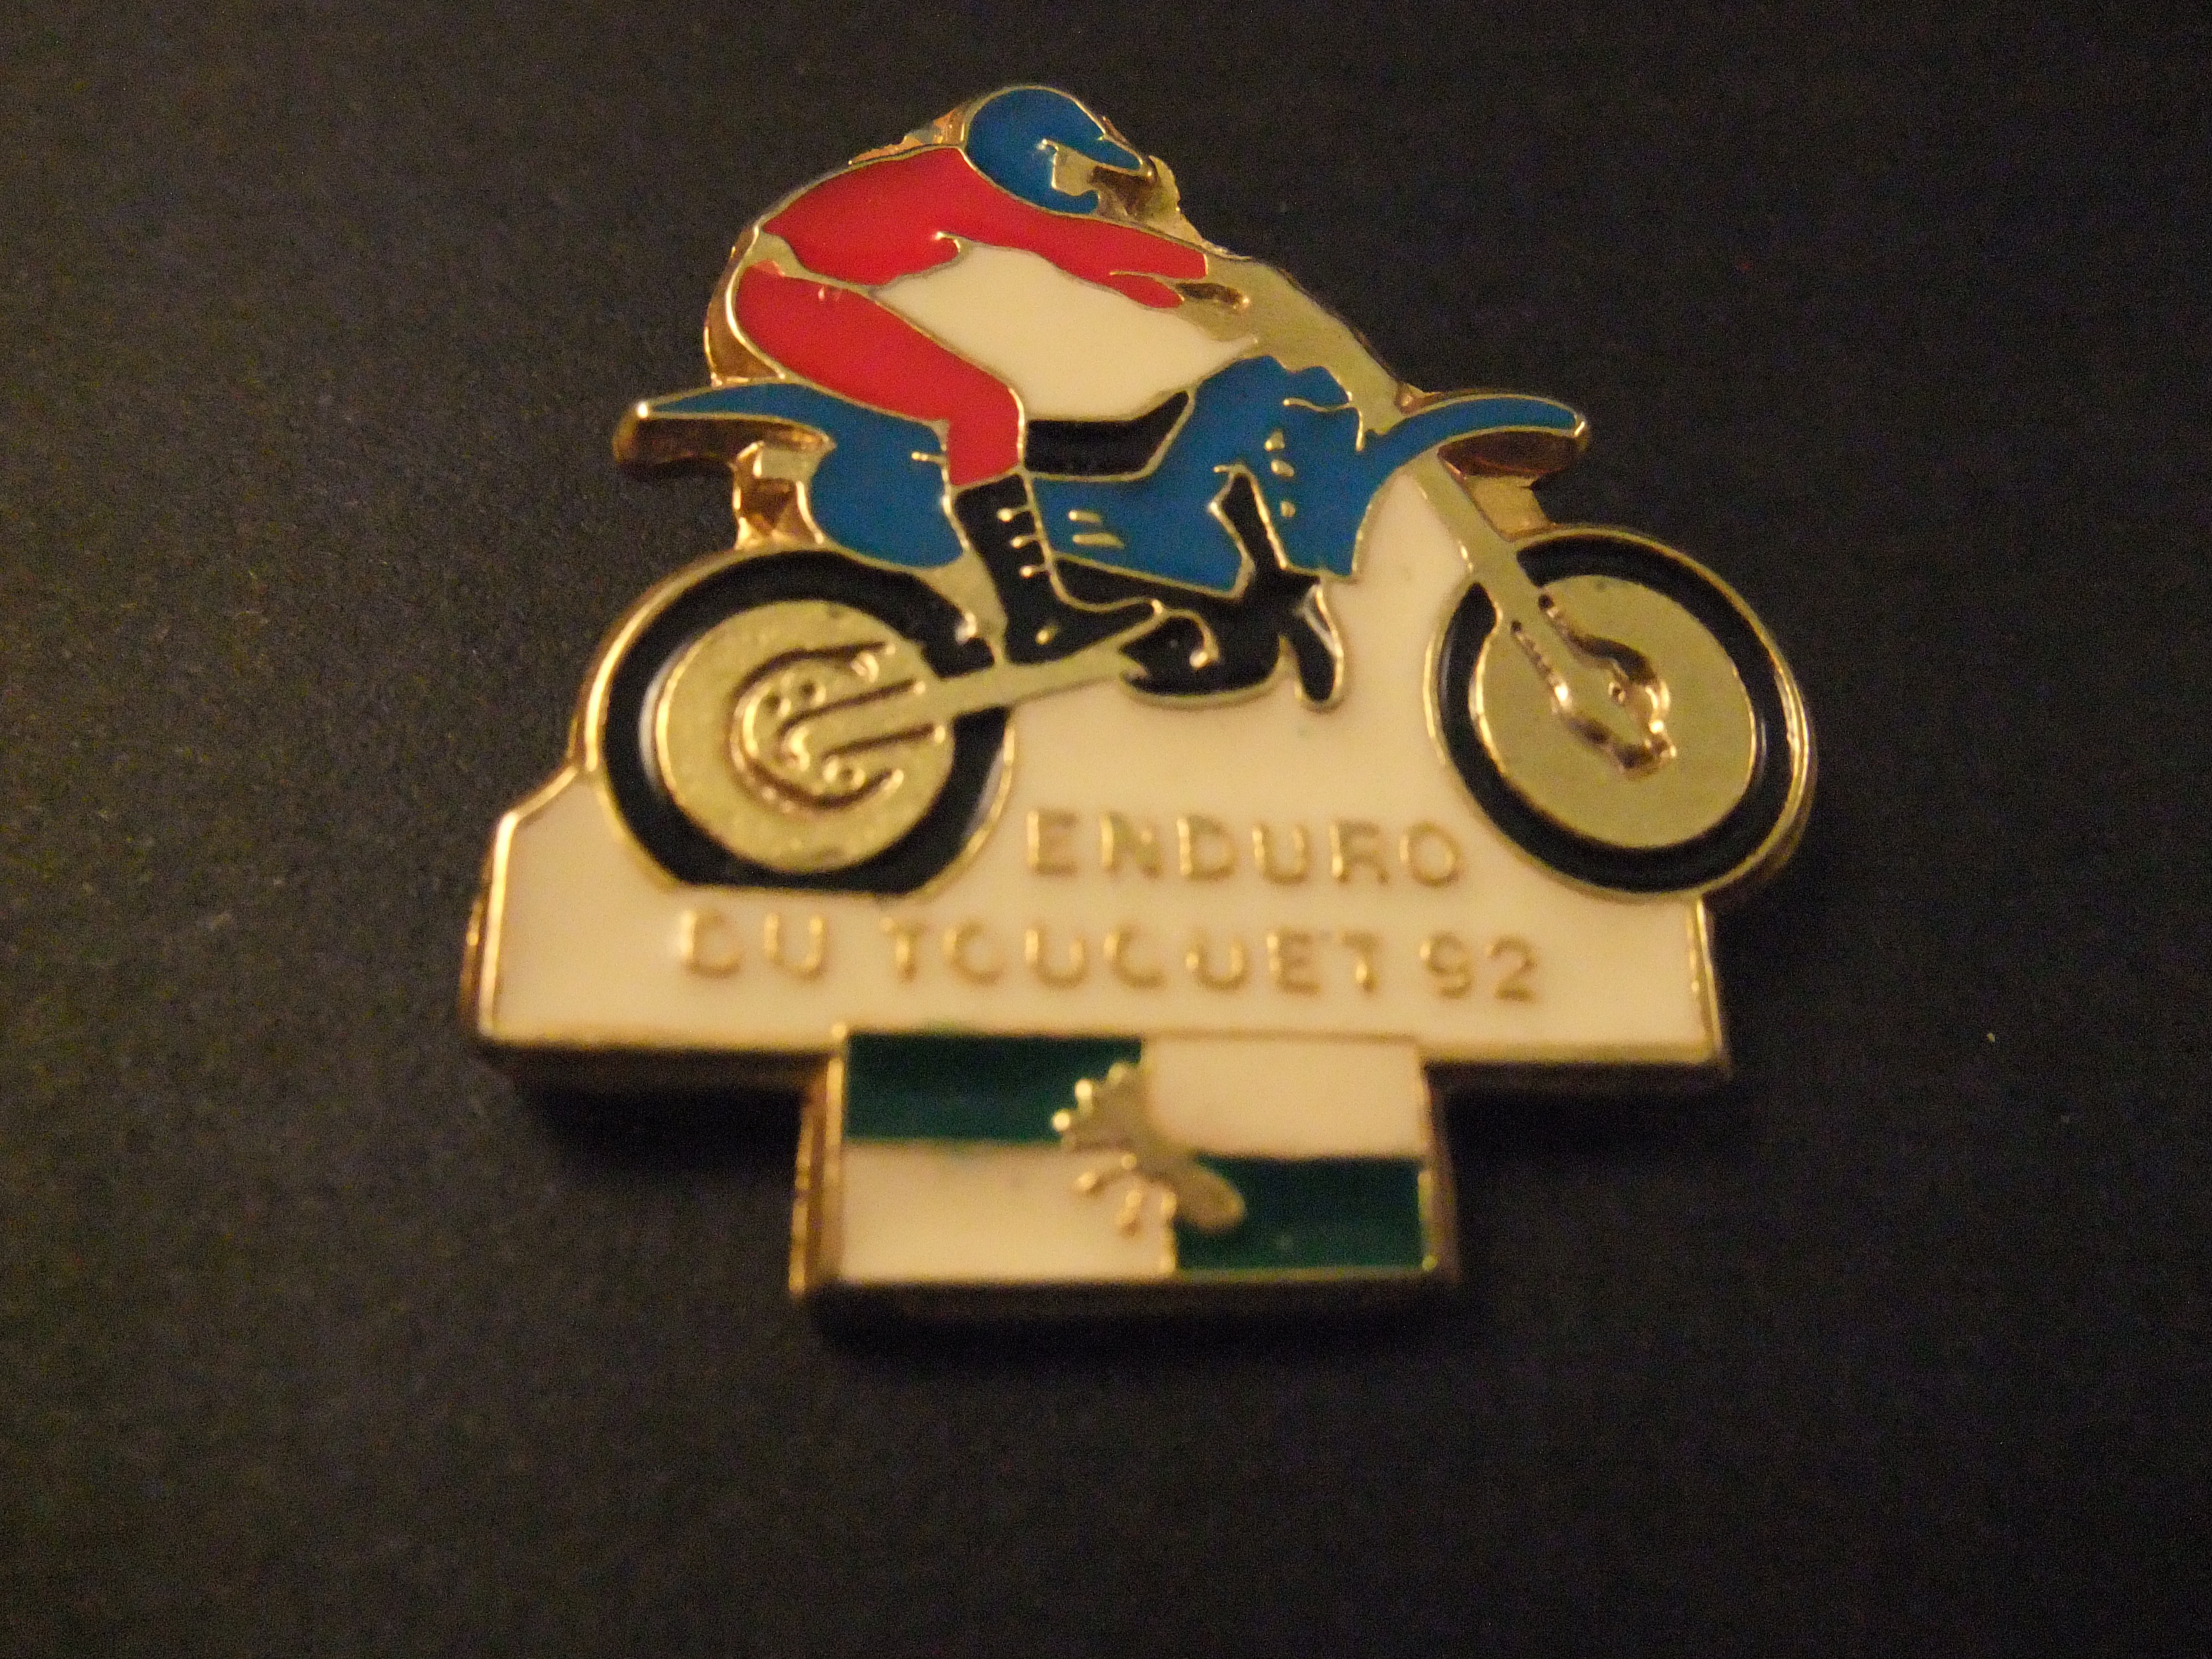 Enduro (tak van de motorsport ) ontstaan uit de speedtrial, du touquet 1992, winnaar Yann Guédard ( 250 cc klasse)